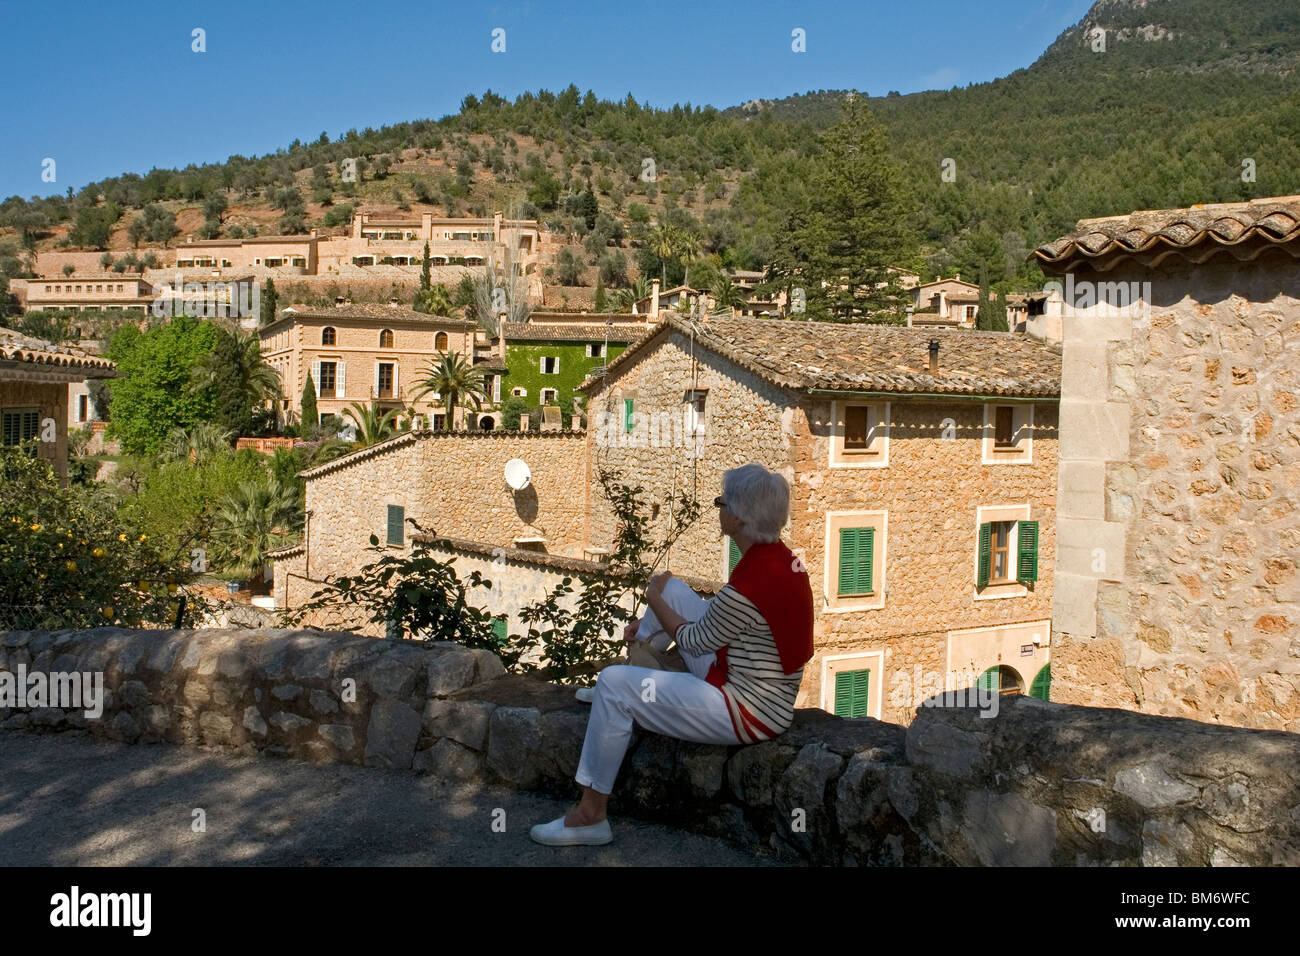 Eine Dame touristischen Blick auf einige schöne Häuser in Deià (Mallorca - Spanien). Une Hauptbusstation Contemplant Certaines Maisons de Deia. Stockfoto